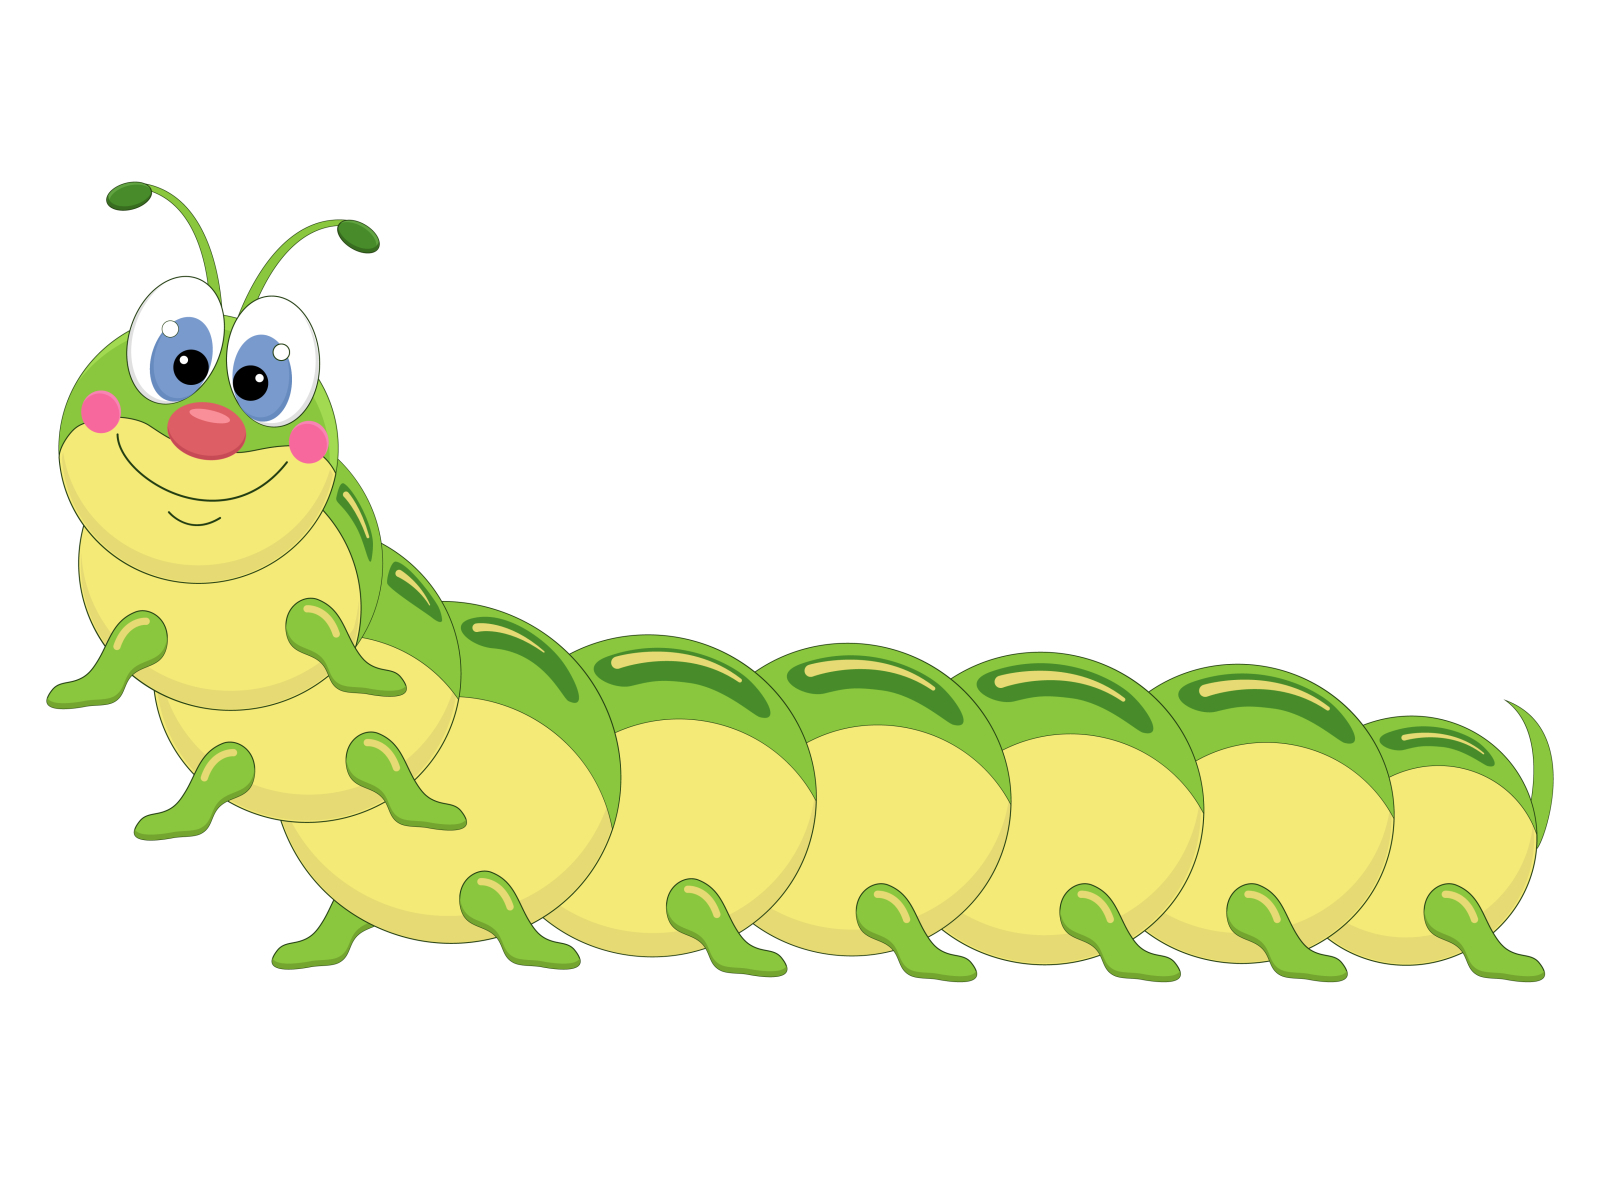 Green caterpillar cartoon Vector by Tatyana Seleznyova on Dribbble